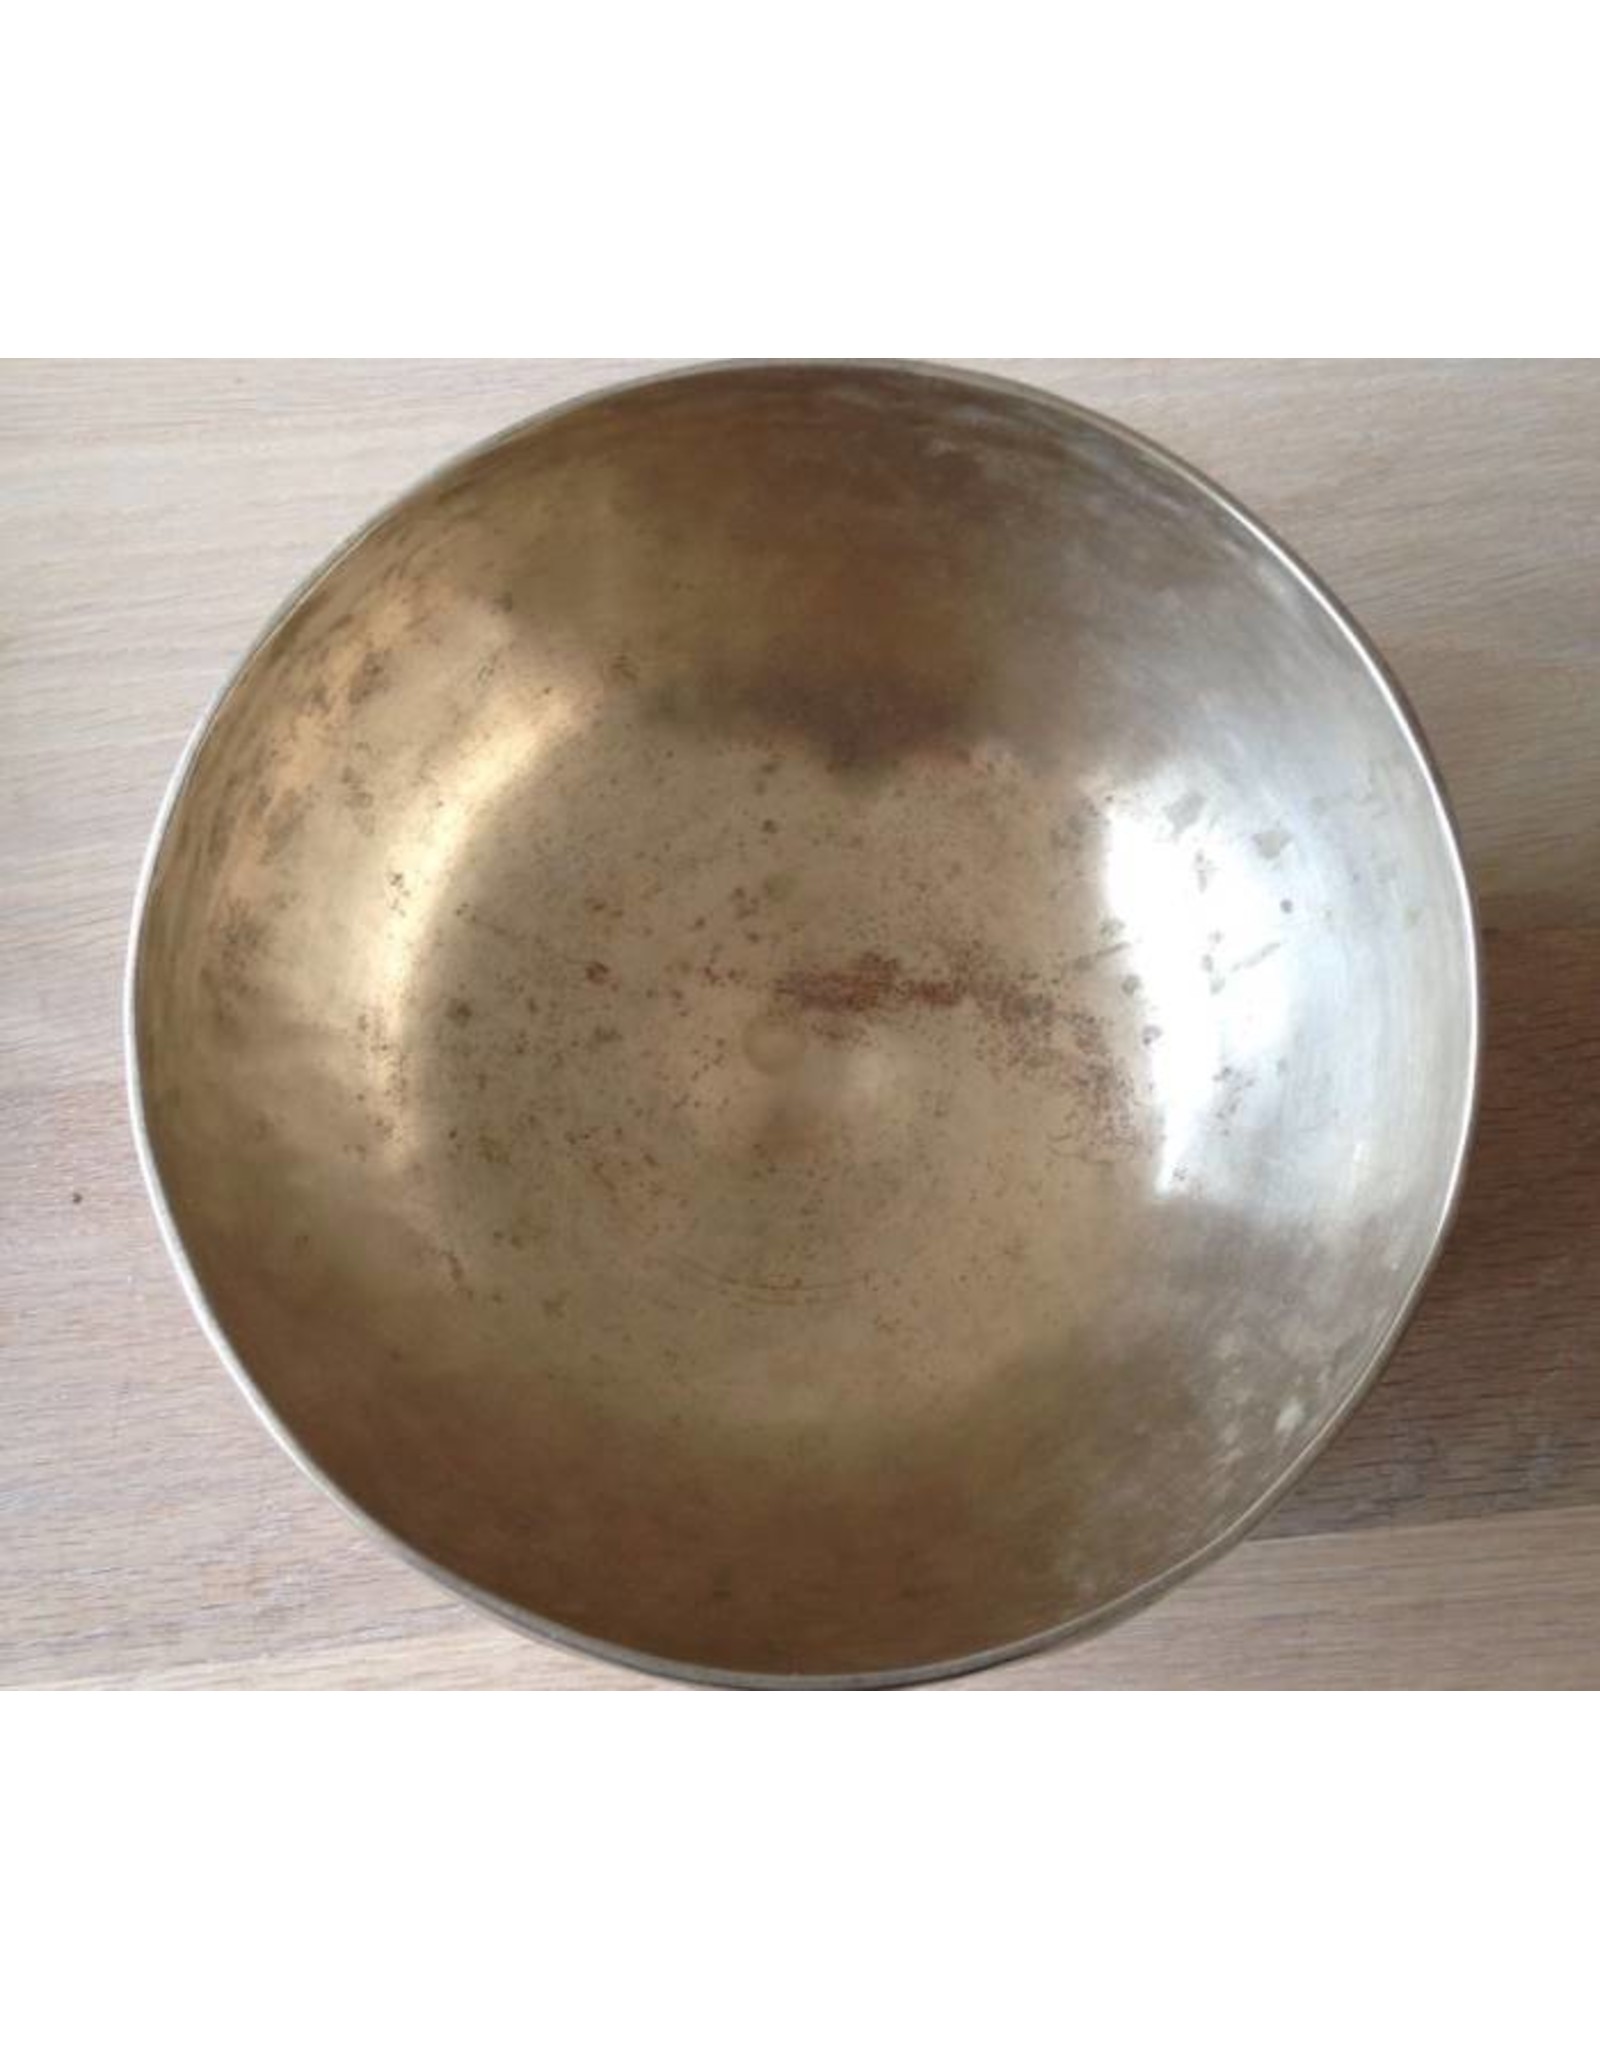 Dakini antique singing bowl Cobrebati 19.5 cm F